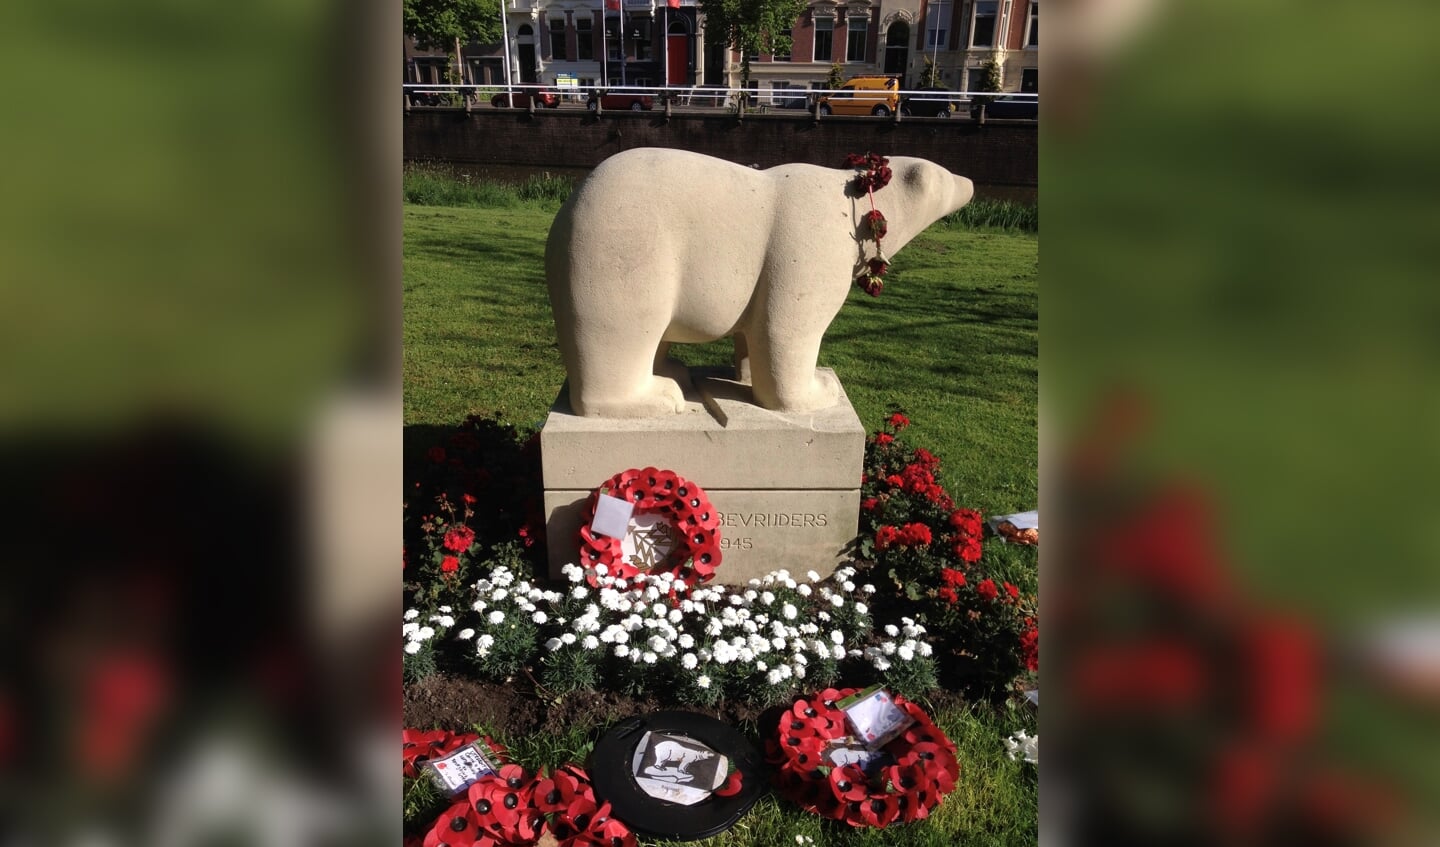 Het Polar Bear Monument in de bloemen tijdens een herdenking in 2015. (foto Marie-José Wessels)